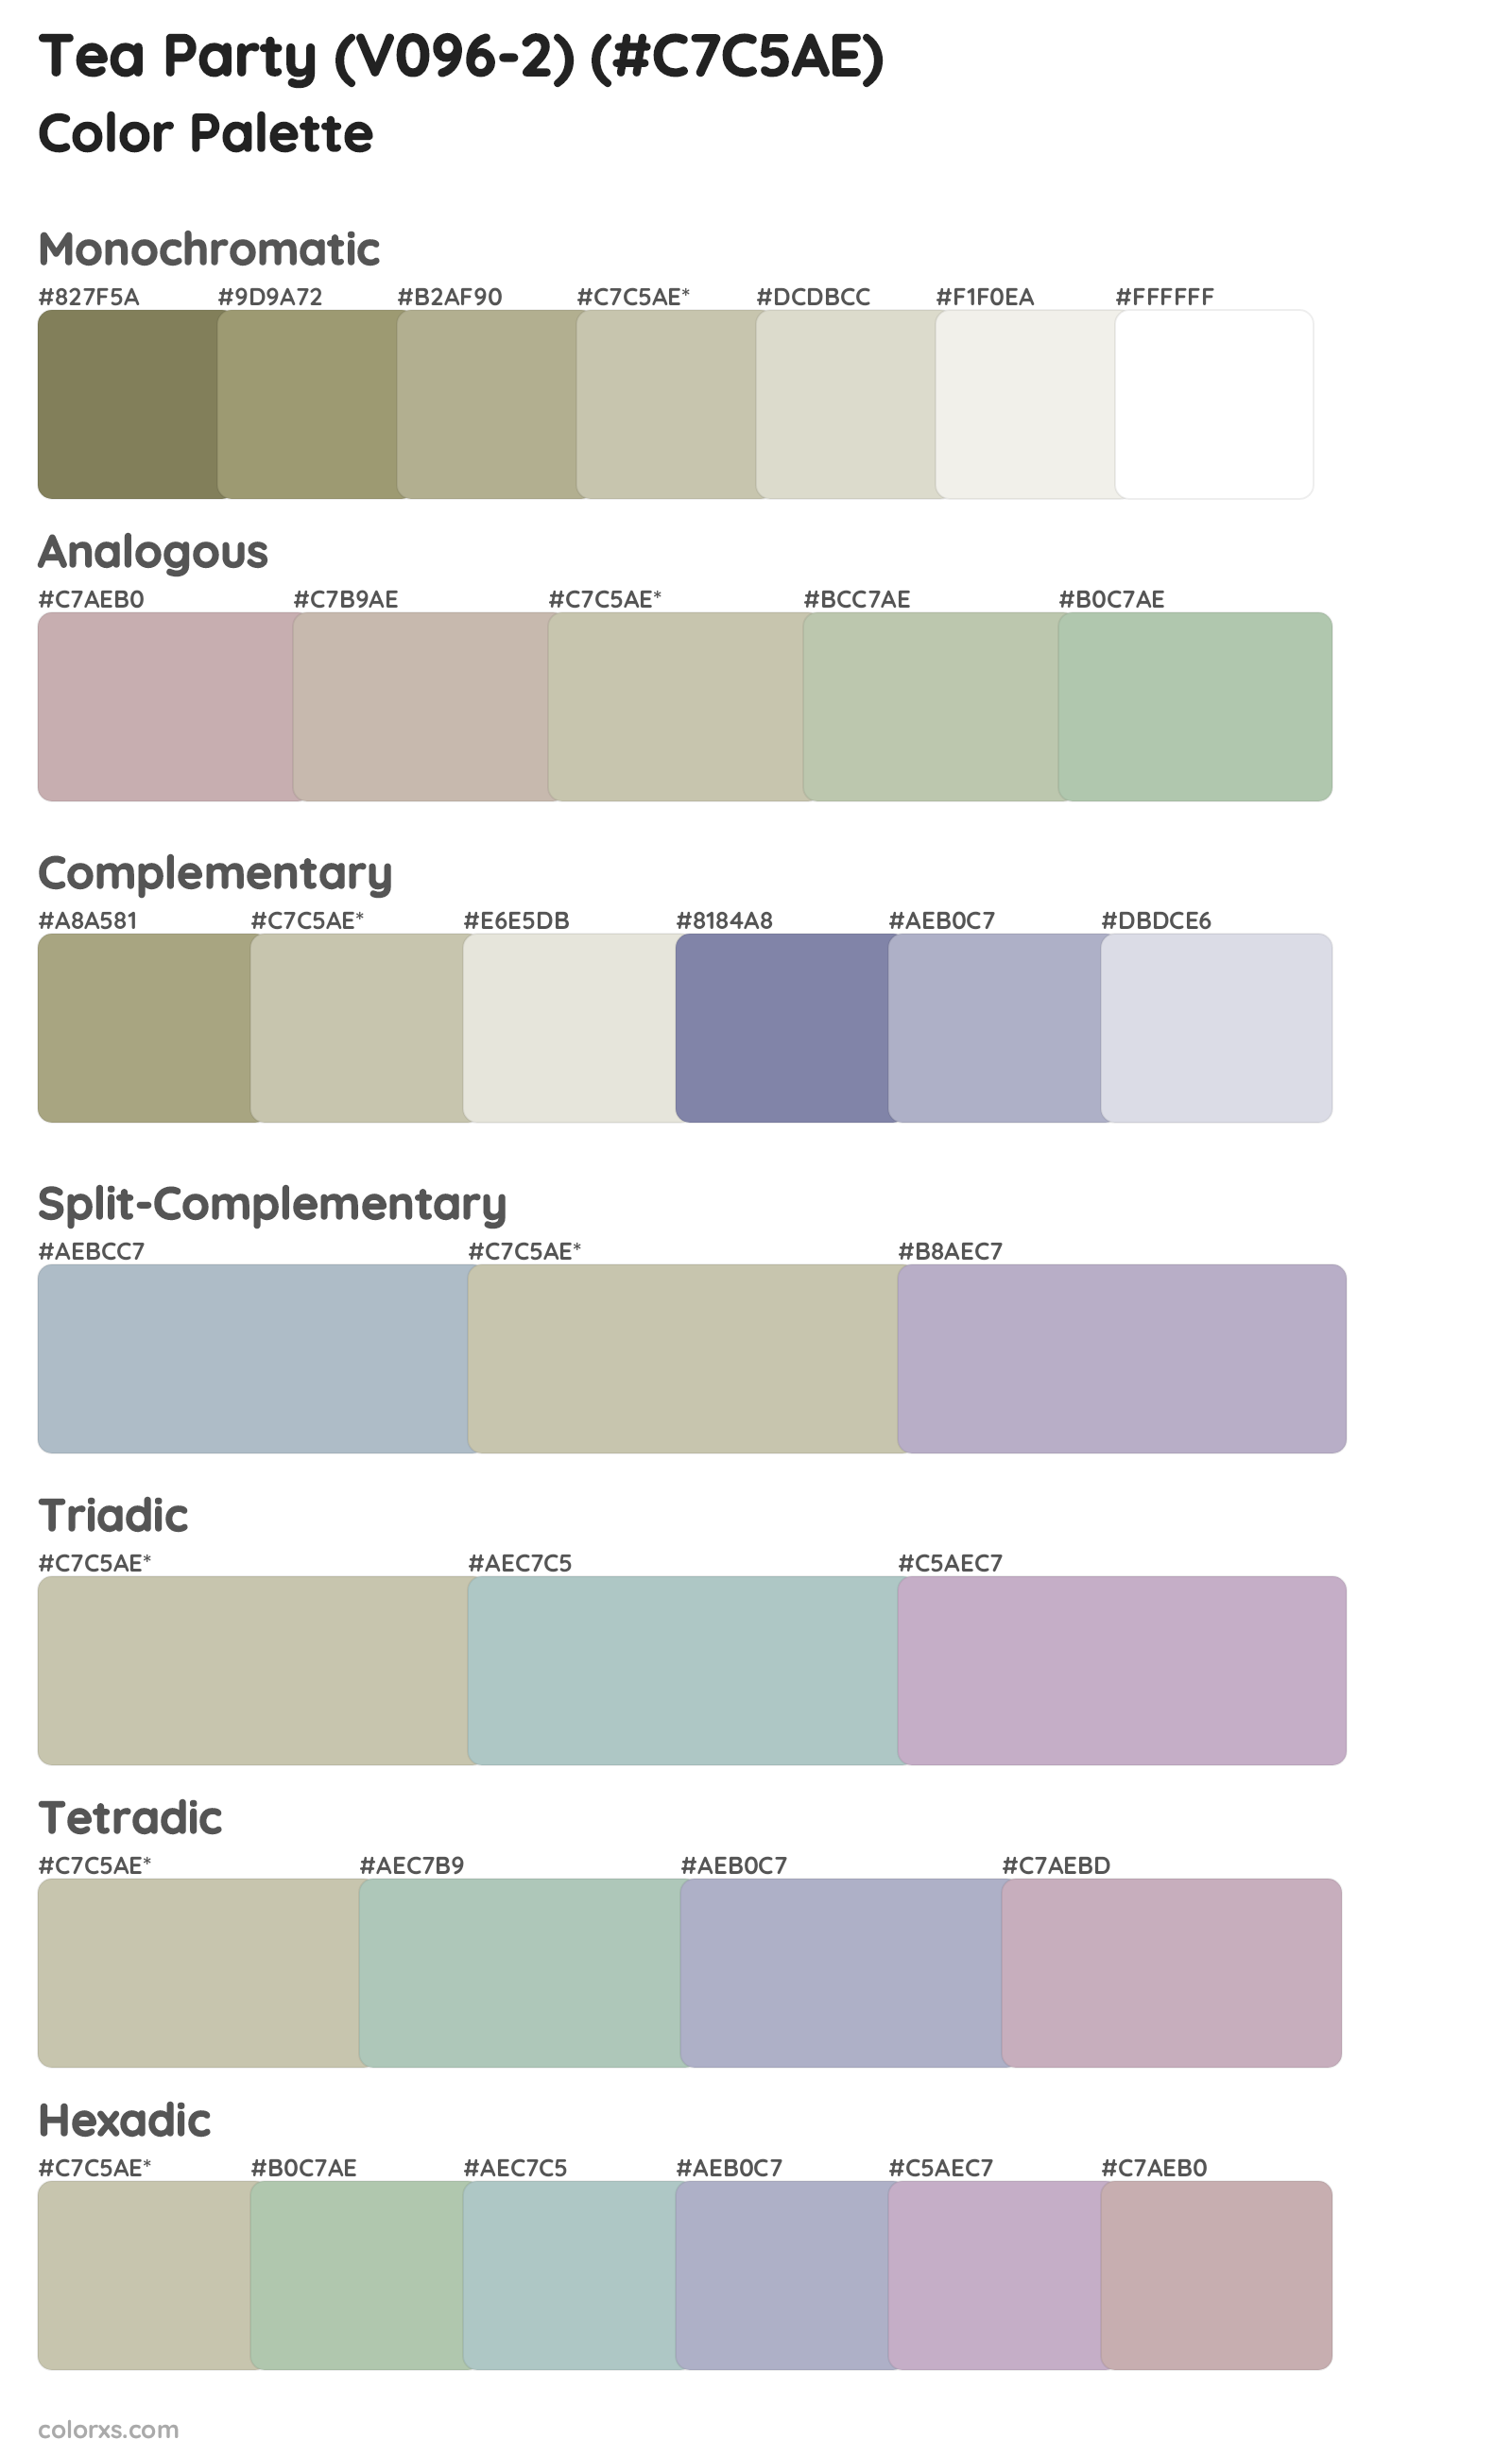 Tea Party (V096-2) Color Scheme Palettes